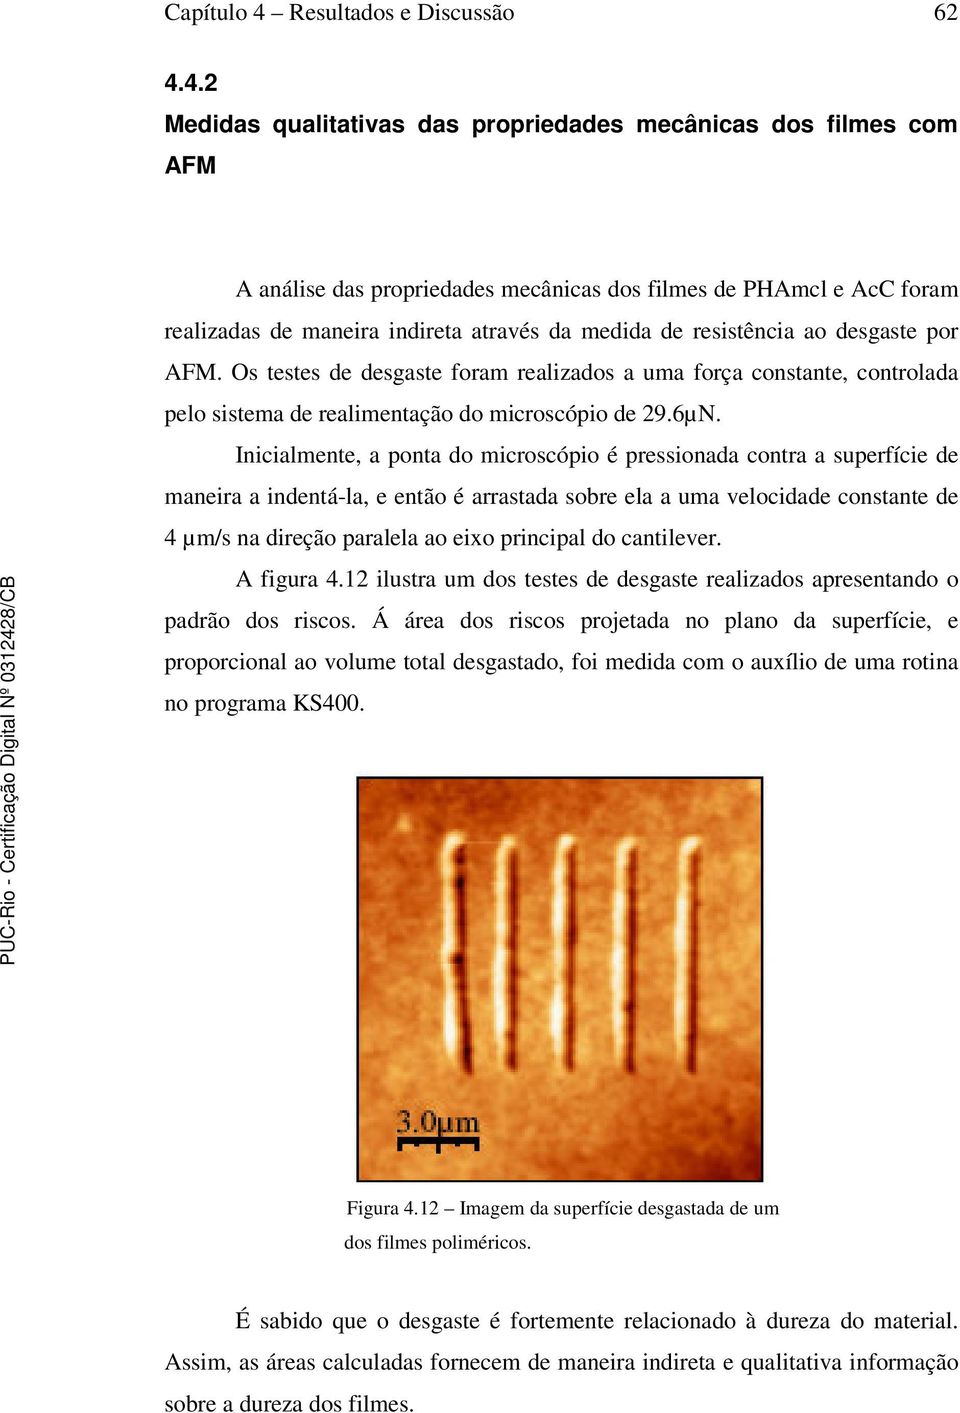 4.2 Medidas qualitativas das propriedades mecânicas dos filmes com AFM A análise das propriedades mecânicas dos filmes de PHAmcl e AcC foram realizadas de maneira indireta através da medida de